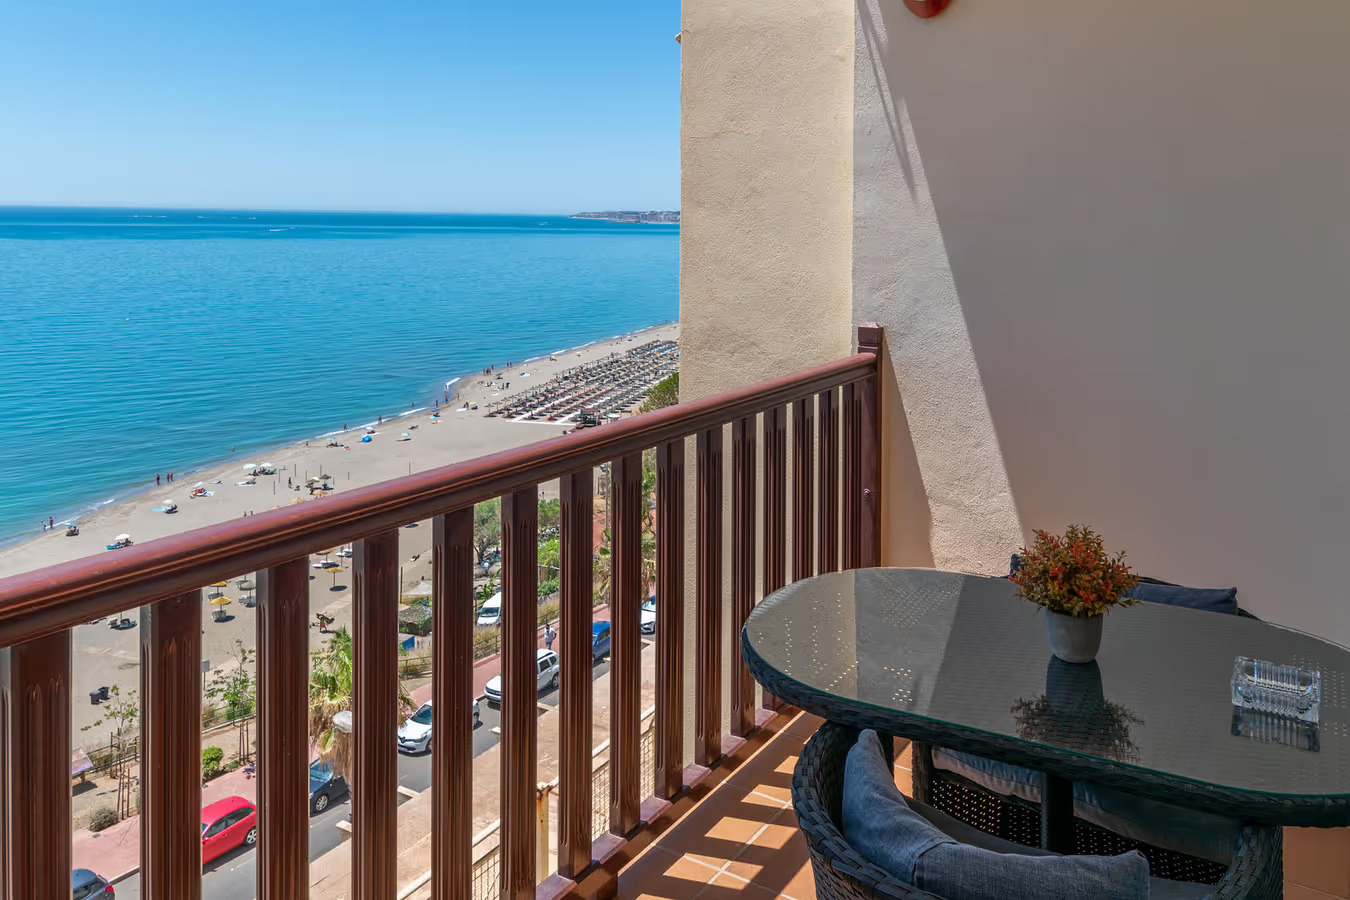 Se vende magnifico apartamento con vistas al mar en 1ª línea de playa zona Carvajal (Benalmadena)